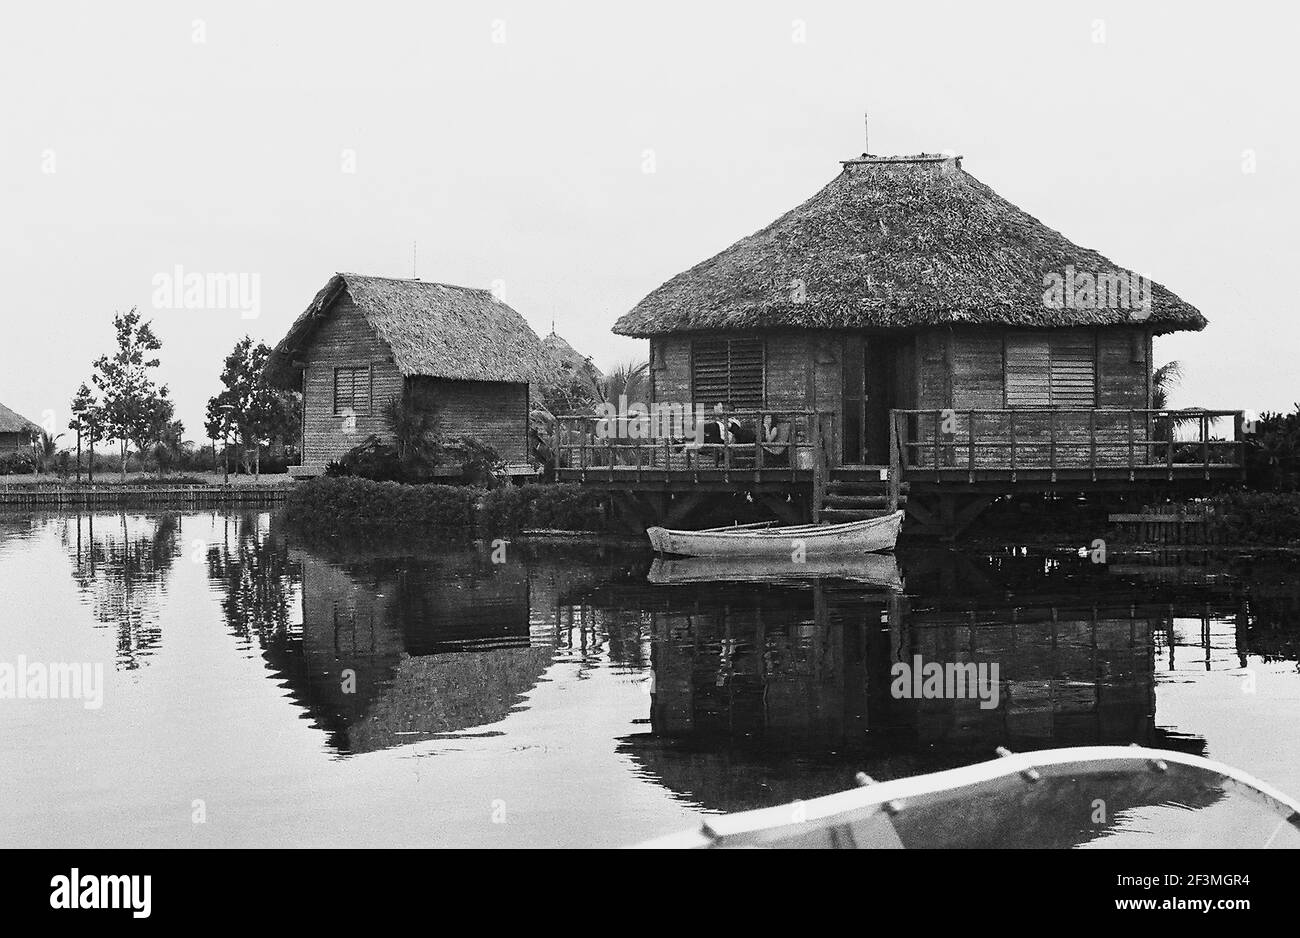 Villaggio indiano di Playa Giron (Baia dei porci), Cuba, Matanzas (Cuba: Provincia), Playa Giron (Cuba), 1963. Dalla collezione di fotografie Deena Stryker. () Foto Stock